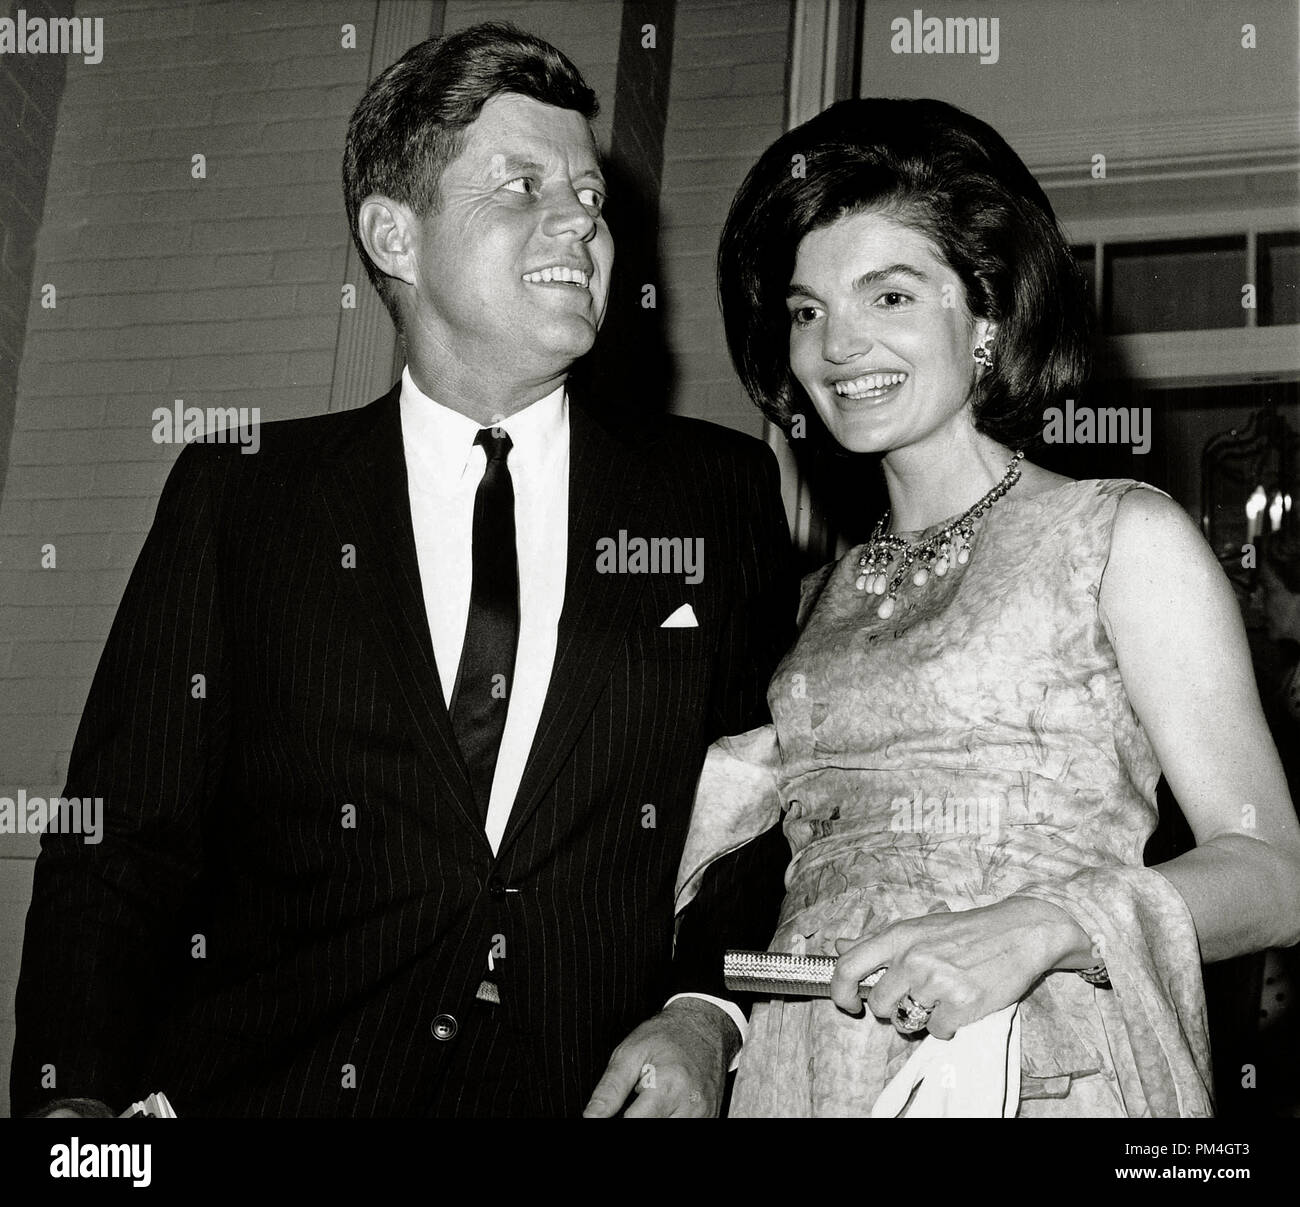 Il presidente John F. Kennedy con la First Lady Jacqueline Bouvier Kennedy, 1963. (Foto per gentile concessione della Biblioteca JFK) Riferimento File # 1003 104THA Foto Stock